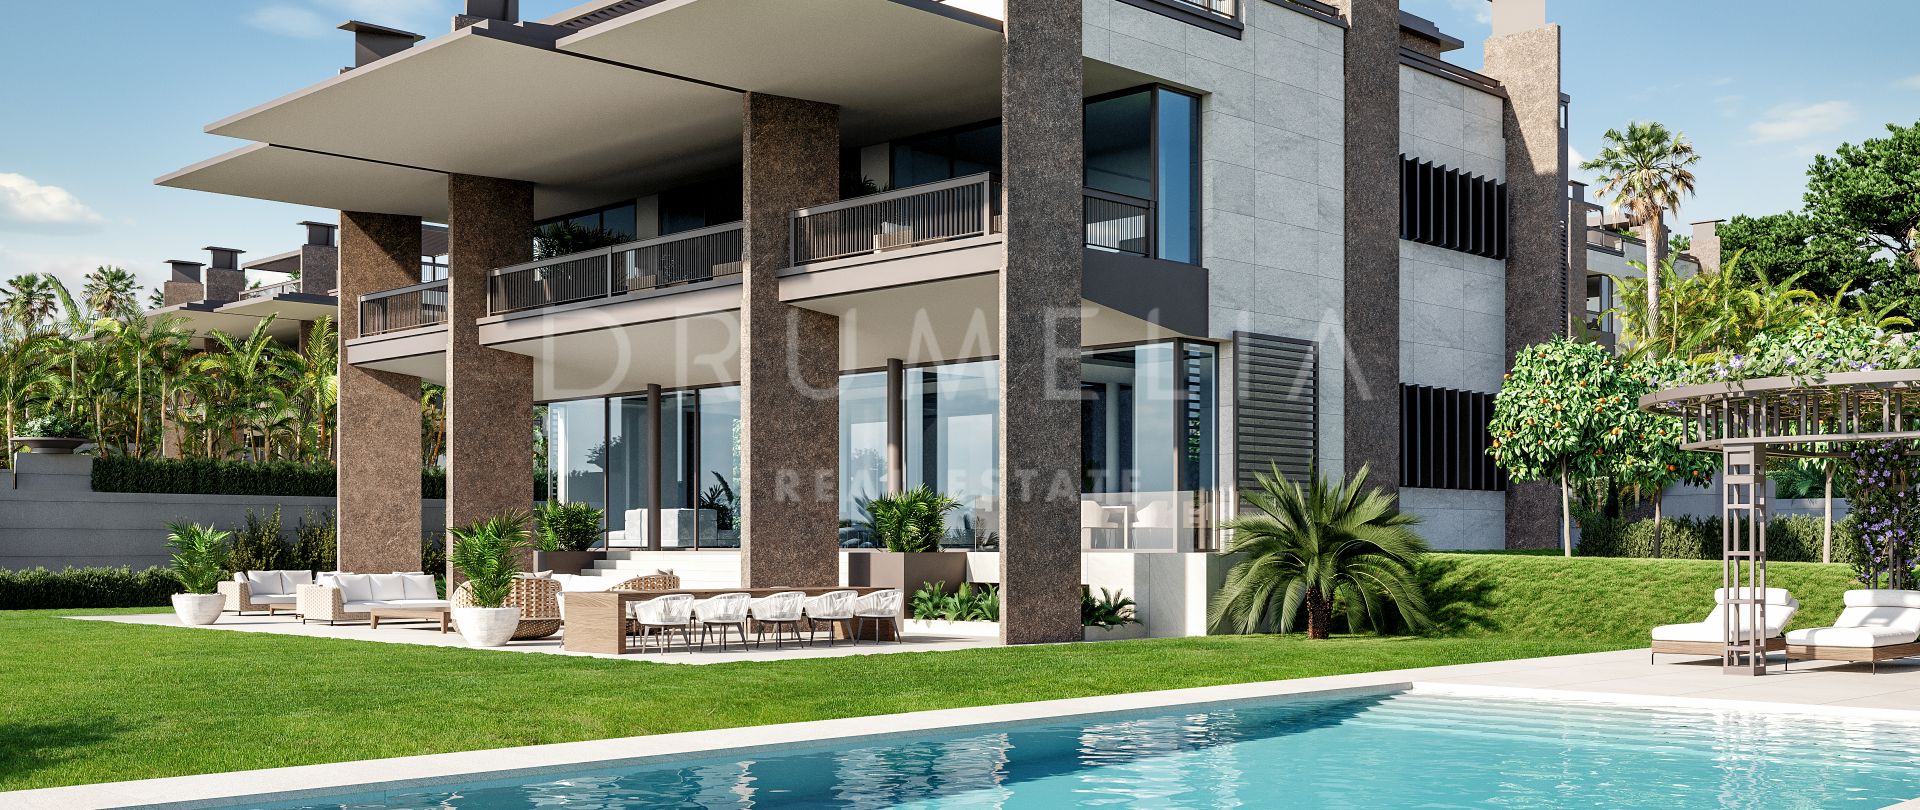 Splendide nouvelle villa moderne de luxe, Atalaya de Rio Verde